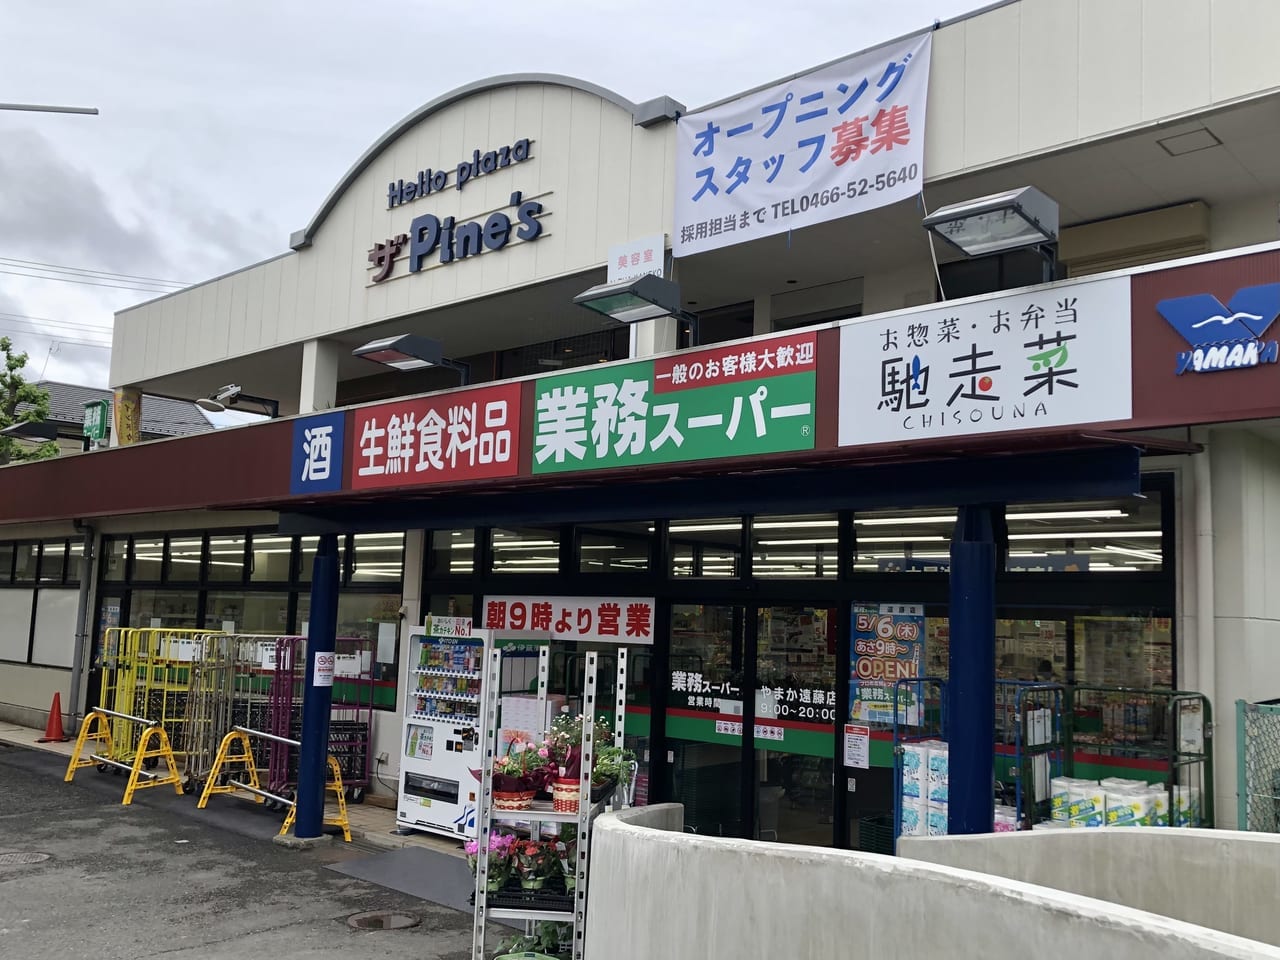 業務スーパーやまか遠藤店